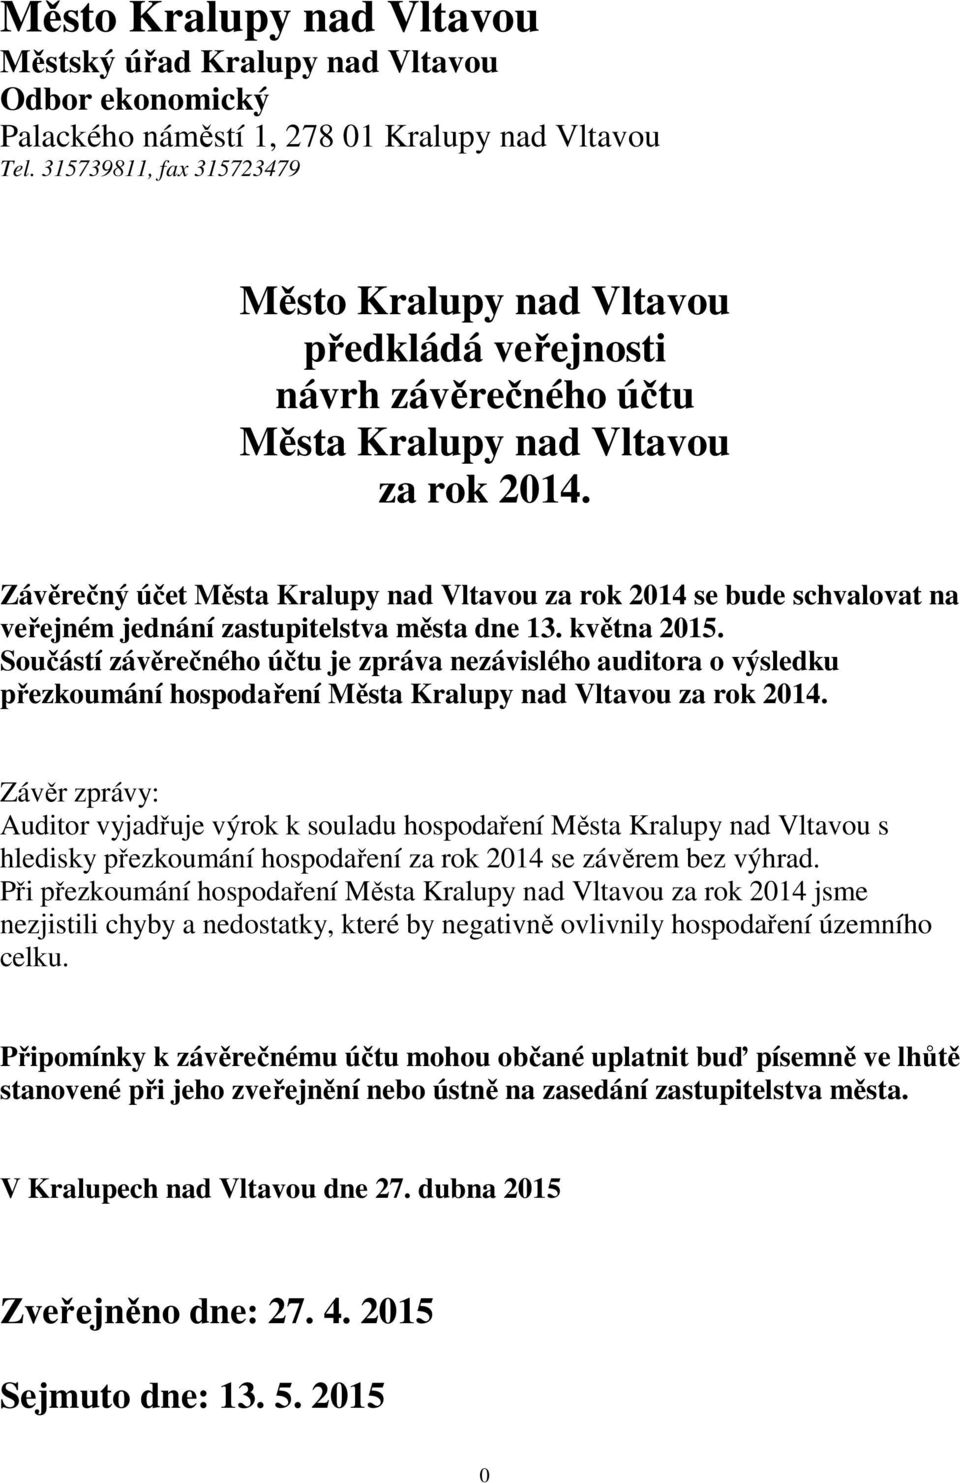 Závěrečný účet Města Kralupy nad Vltavou za rok 2014 se bude schvalovat na veřejném jednání zastupitelstva města dne 13. května 2015.